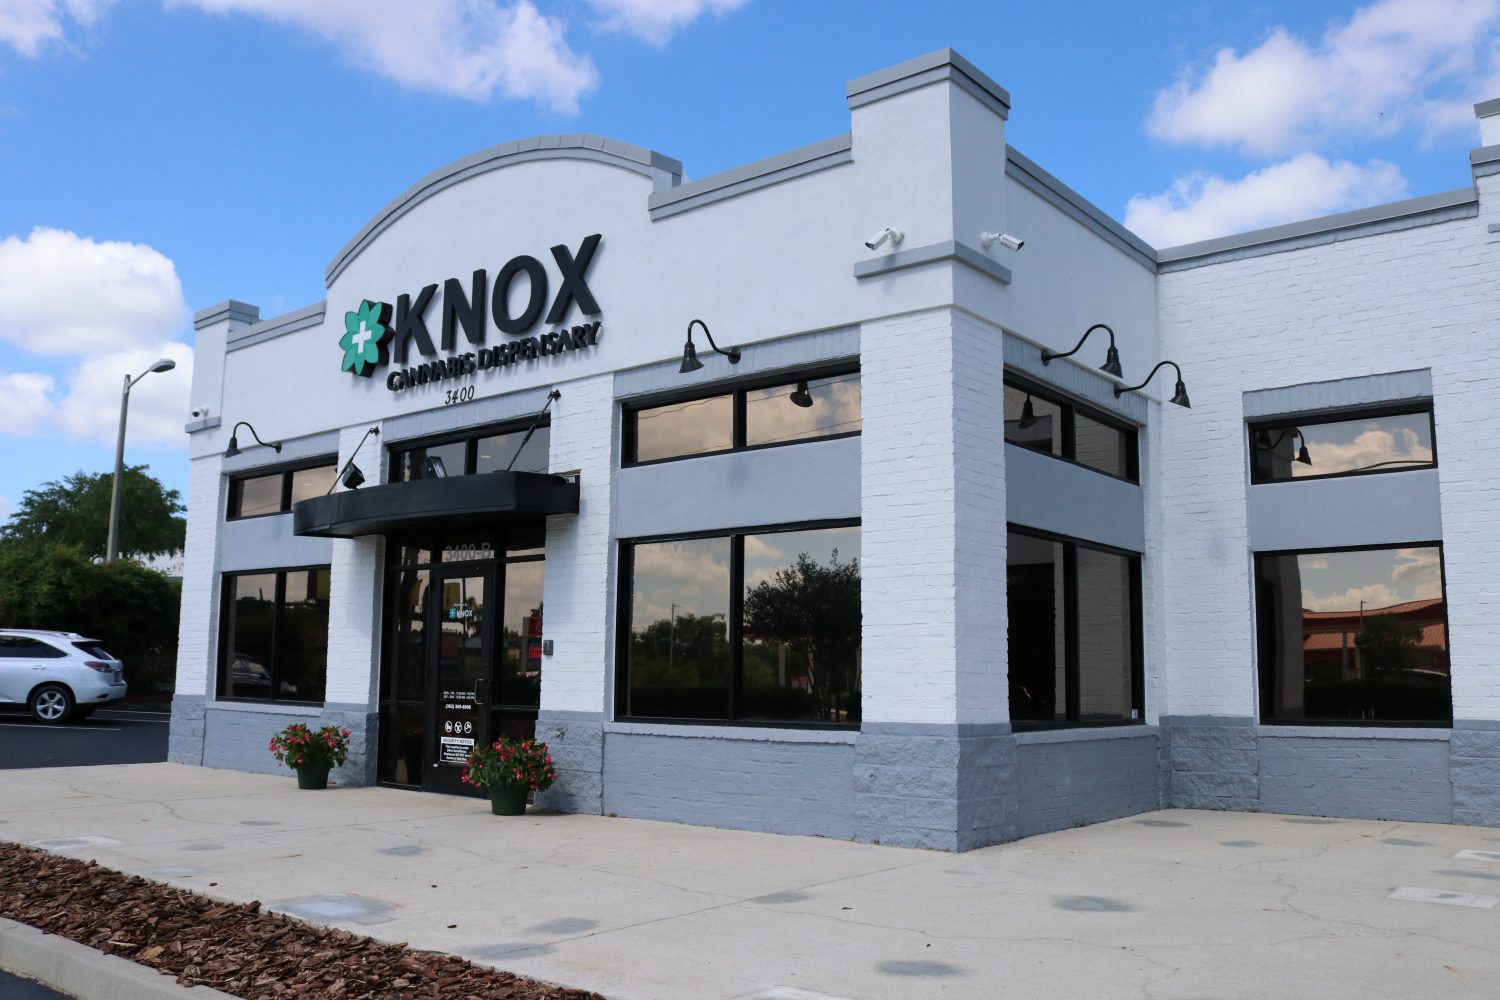 Knox Medical planea abrir cinco tiendas de marihuana medicinal en Miami-Dade